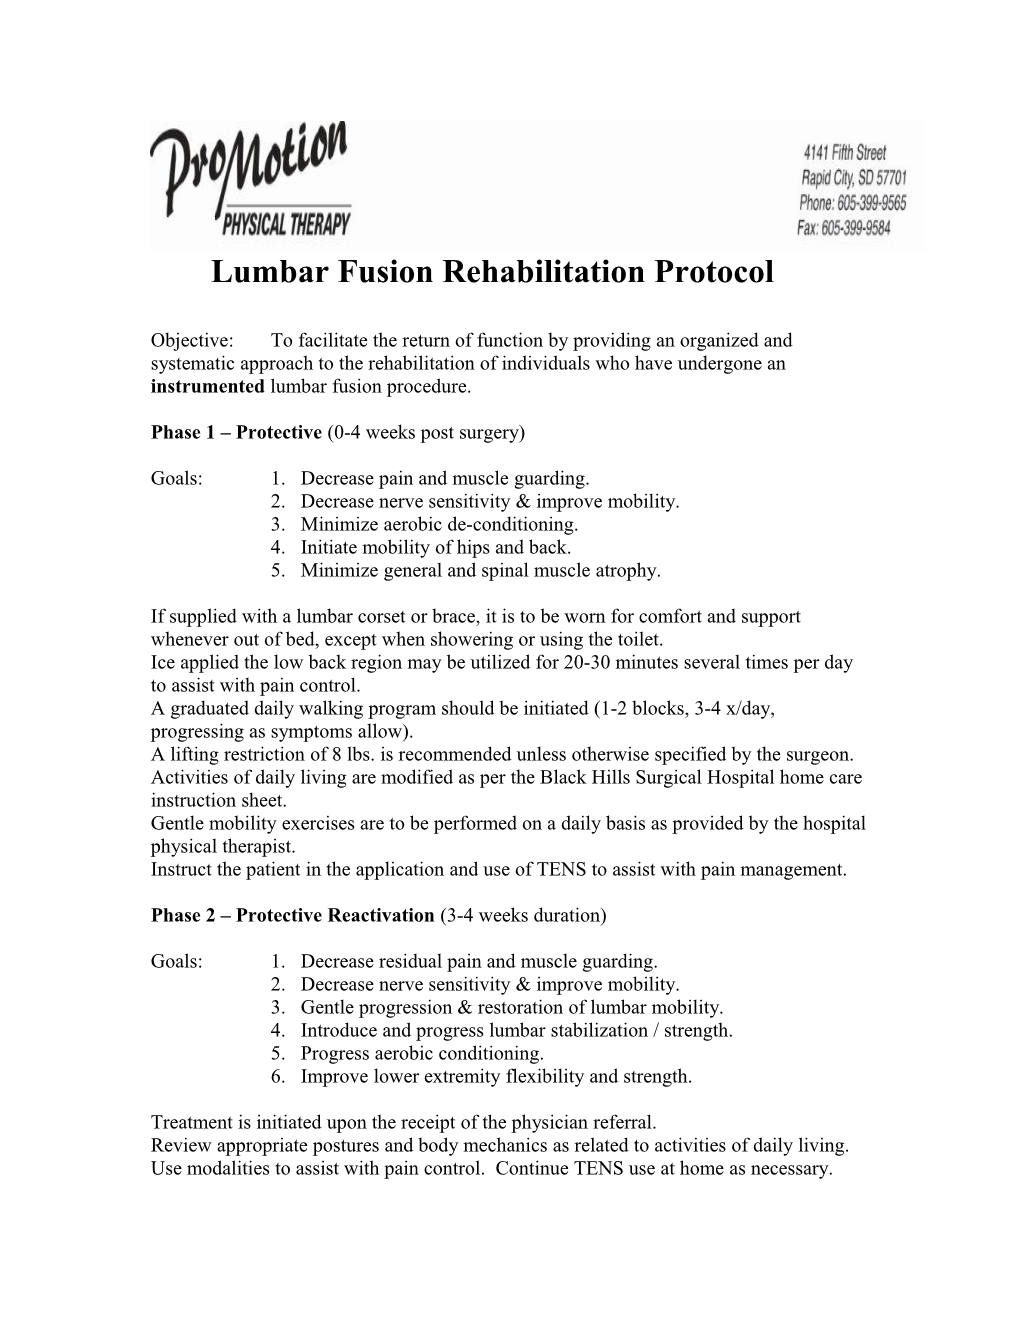 Lumbar Fusion Rehabilitation Protocol